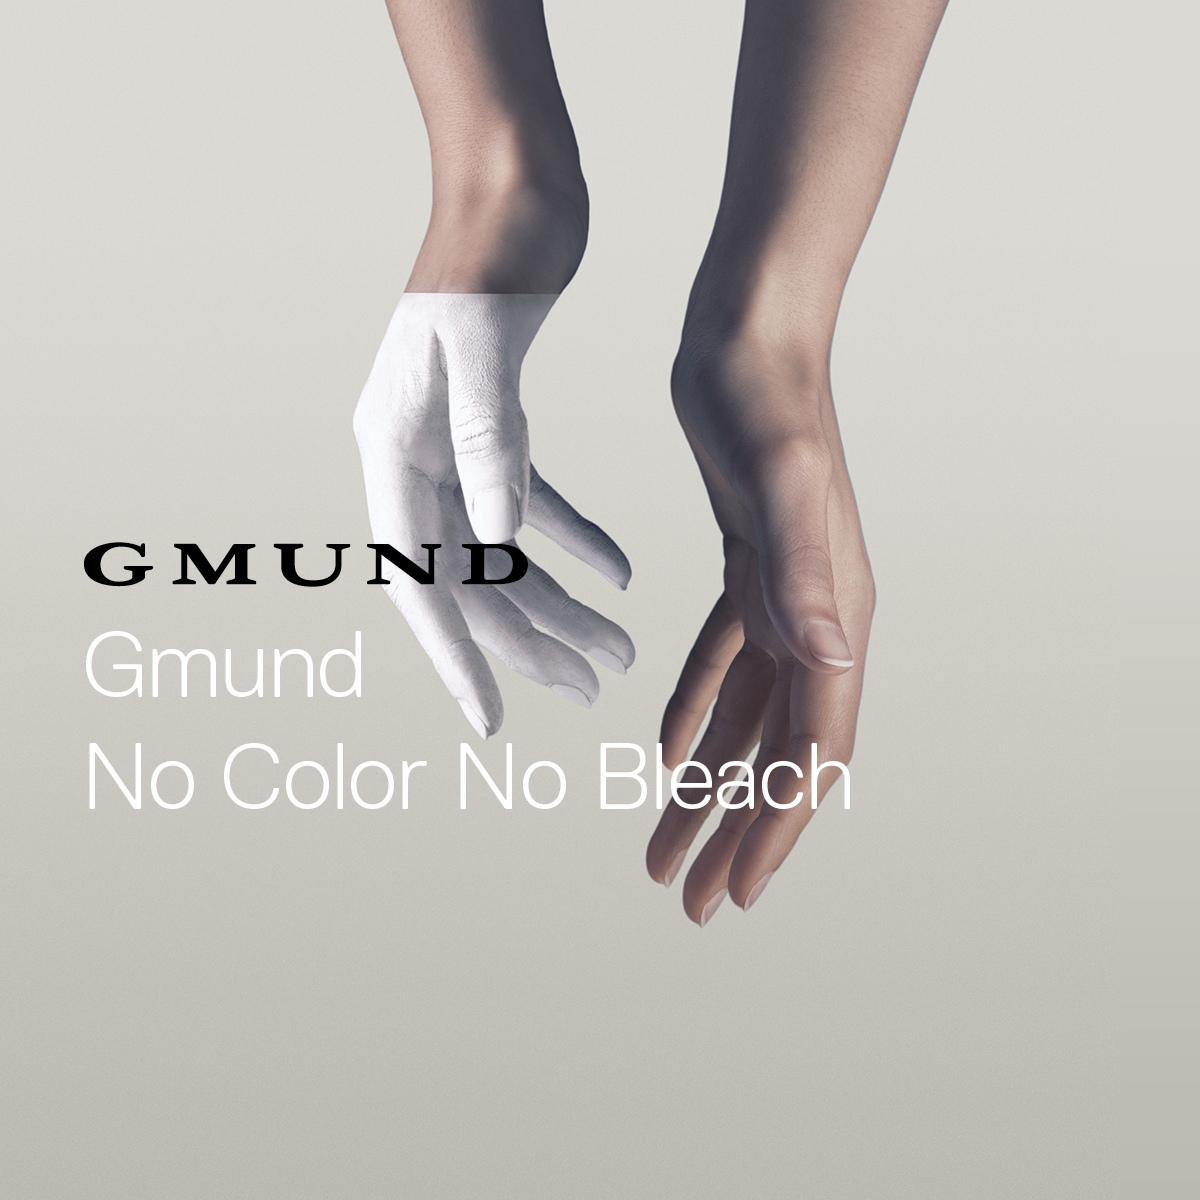 Gmund No Color No Bleach - Compendium